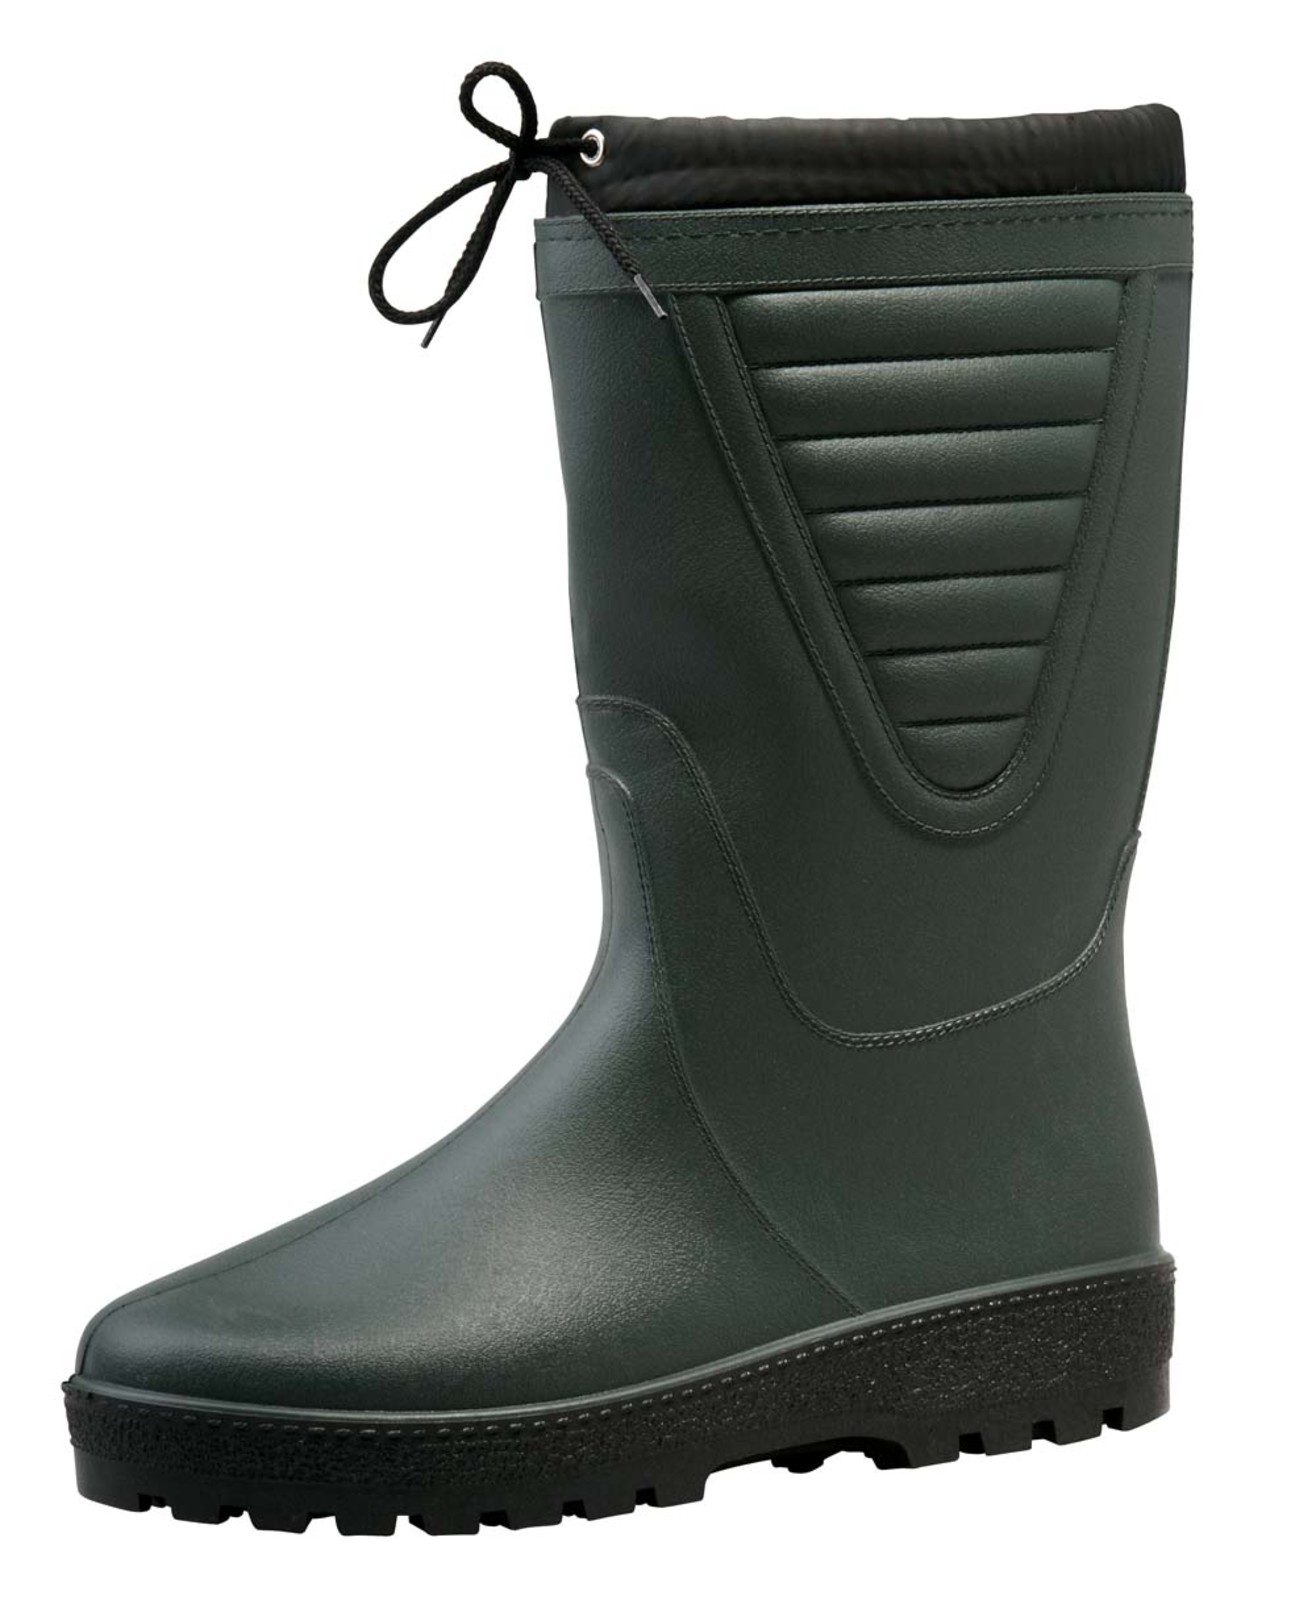 Zateplené čižmy Boots Polar - veľkosť: 41, farba: zelená